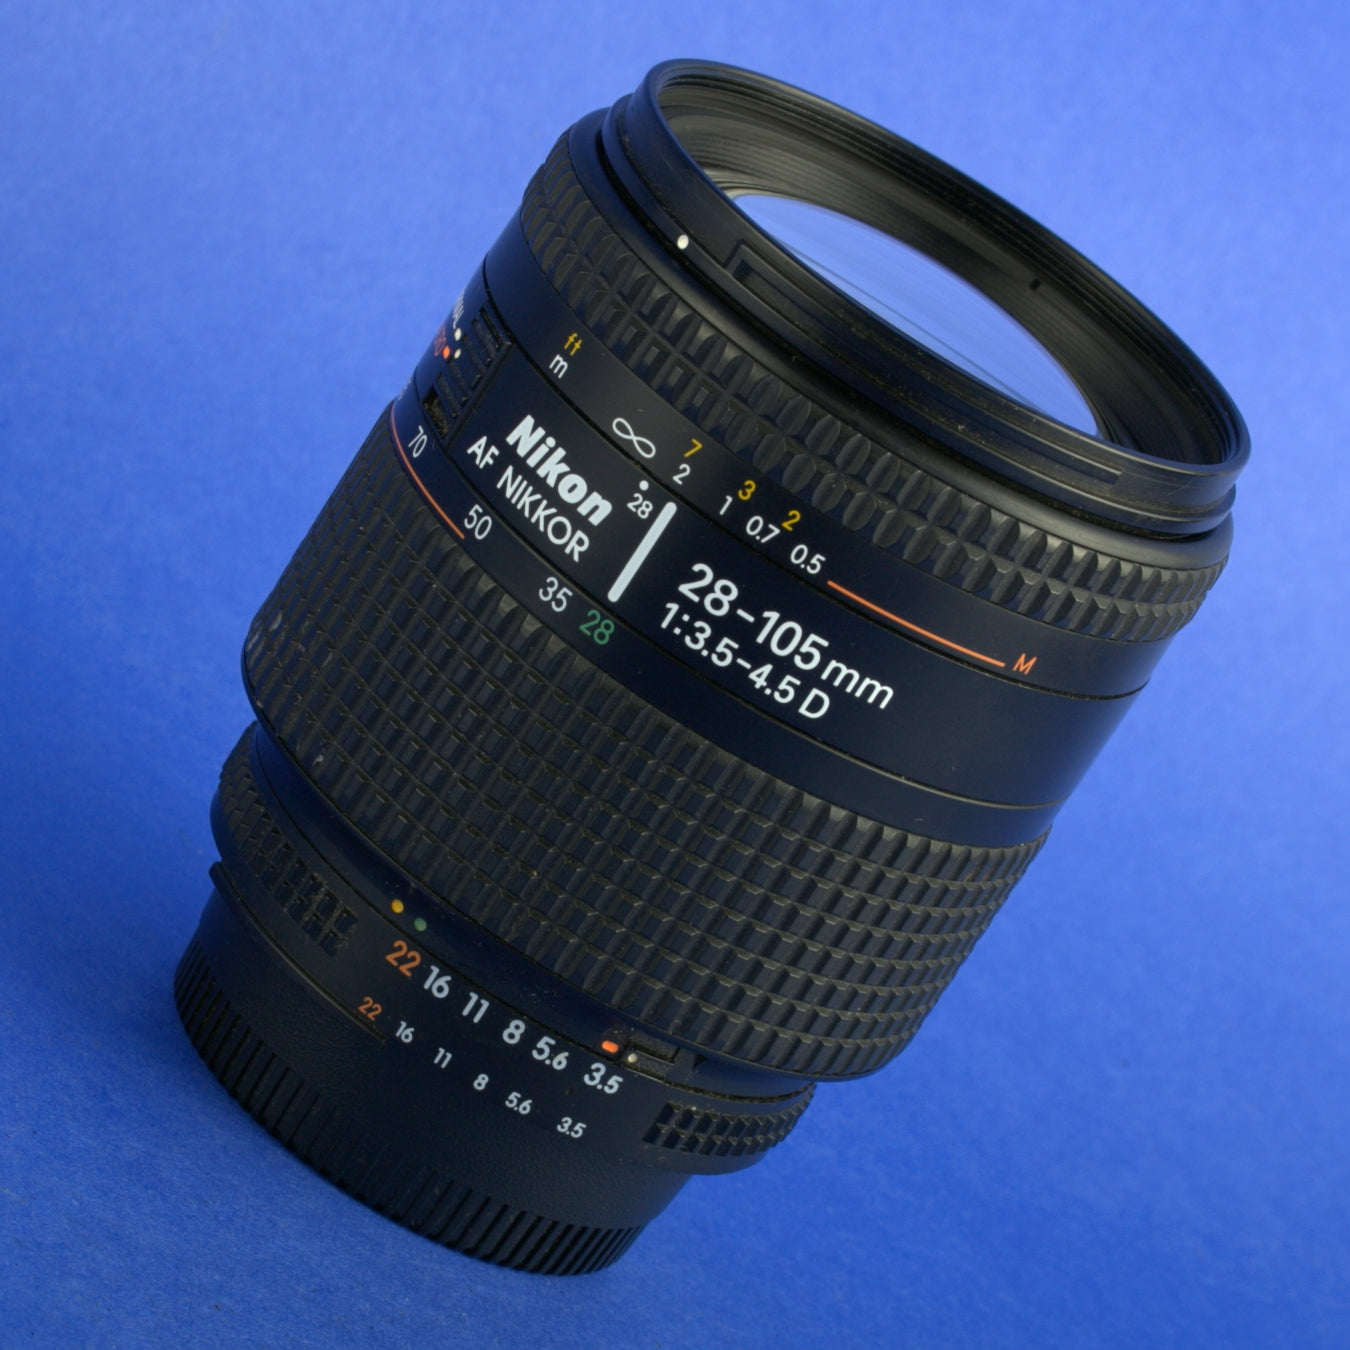 Nikon AF Nikkor 28-105mm 3.5-4.5 D Macro Lens US Model